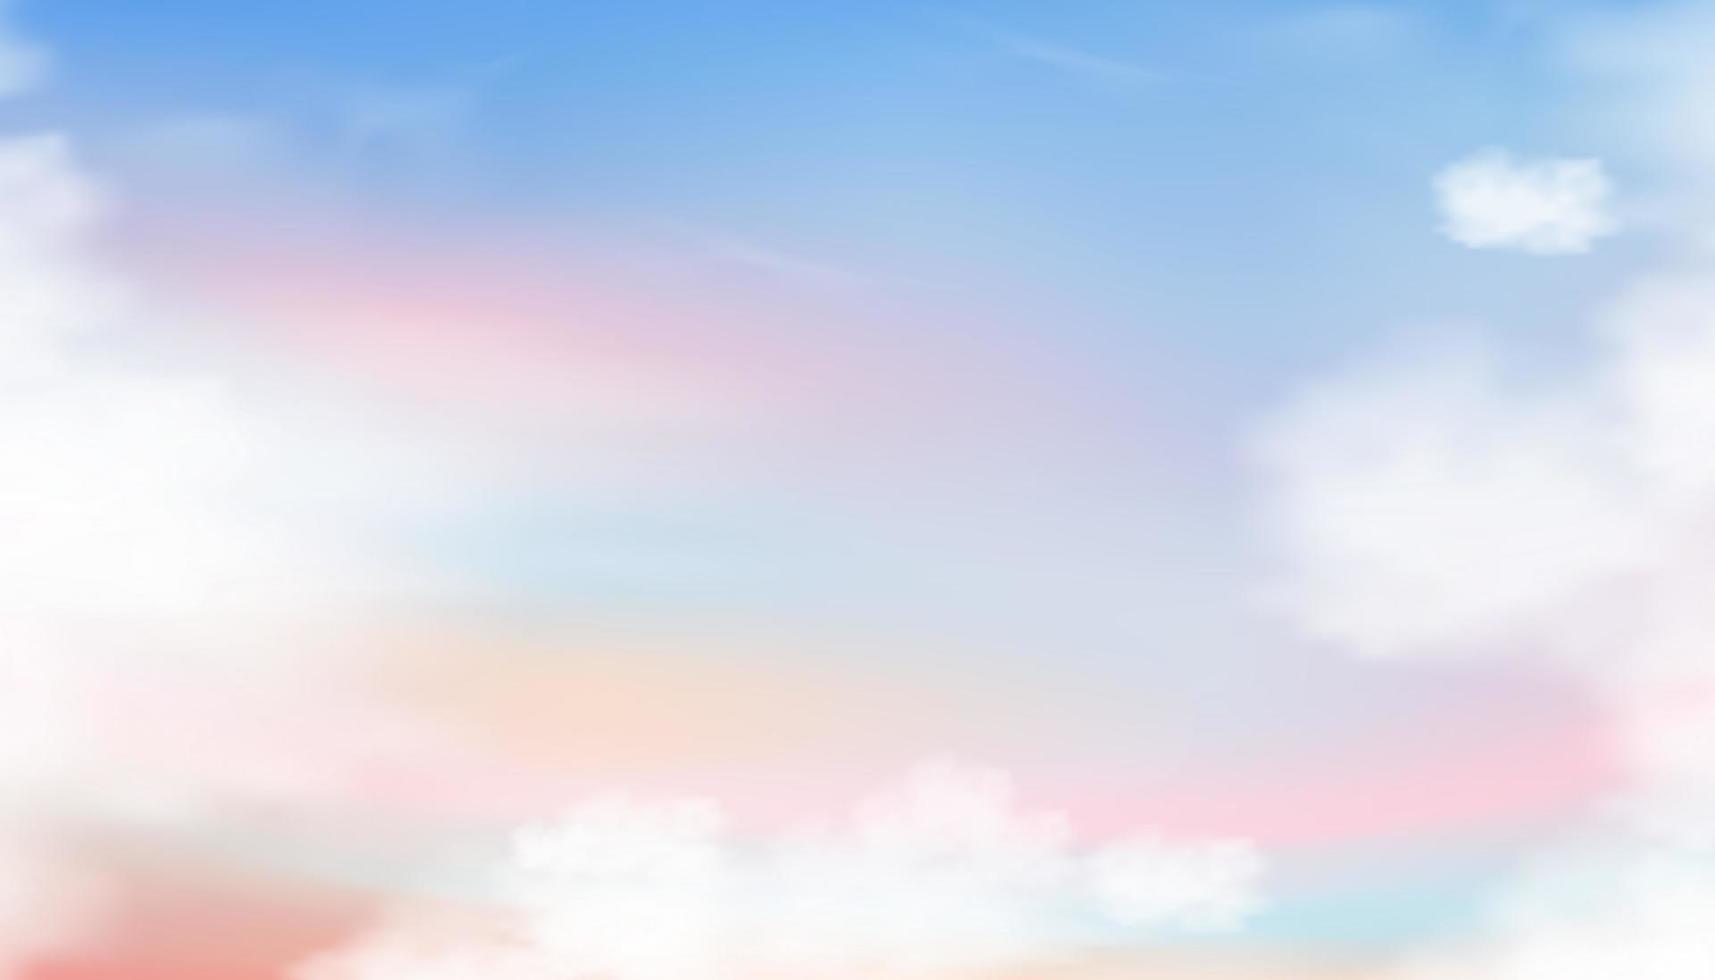 hemel pastel toon met pluizige wolk in blauw, roze, paars, oranje in de ochtend, fantasie magische kleurrijke zonsondergang hemel op lente of zomer, vector illustratie zoete katoenen wolk achtergrond voor vakantie banner